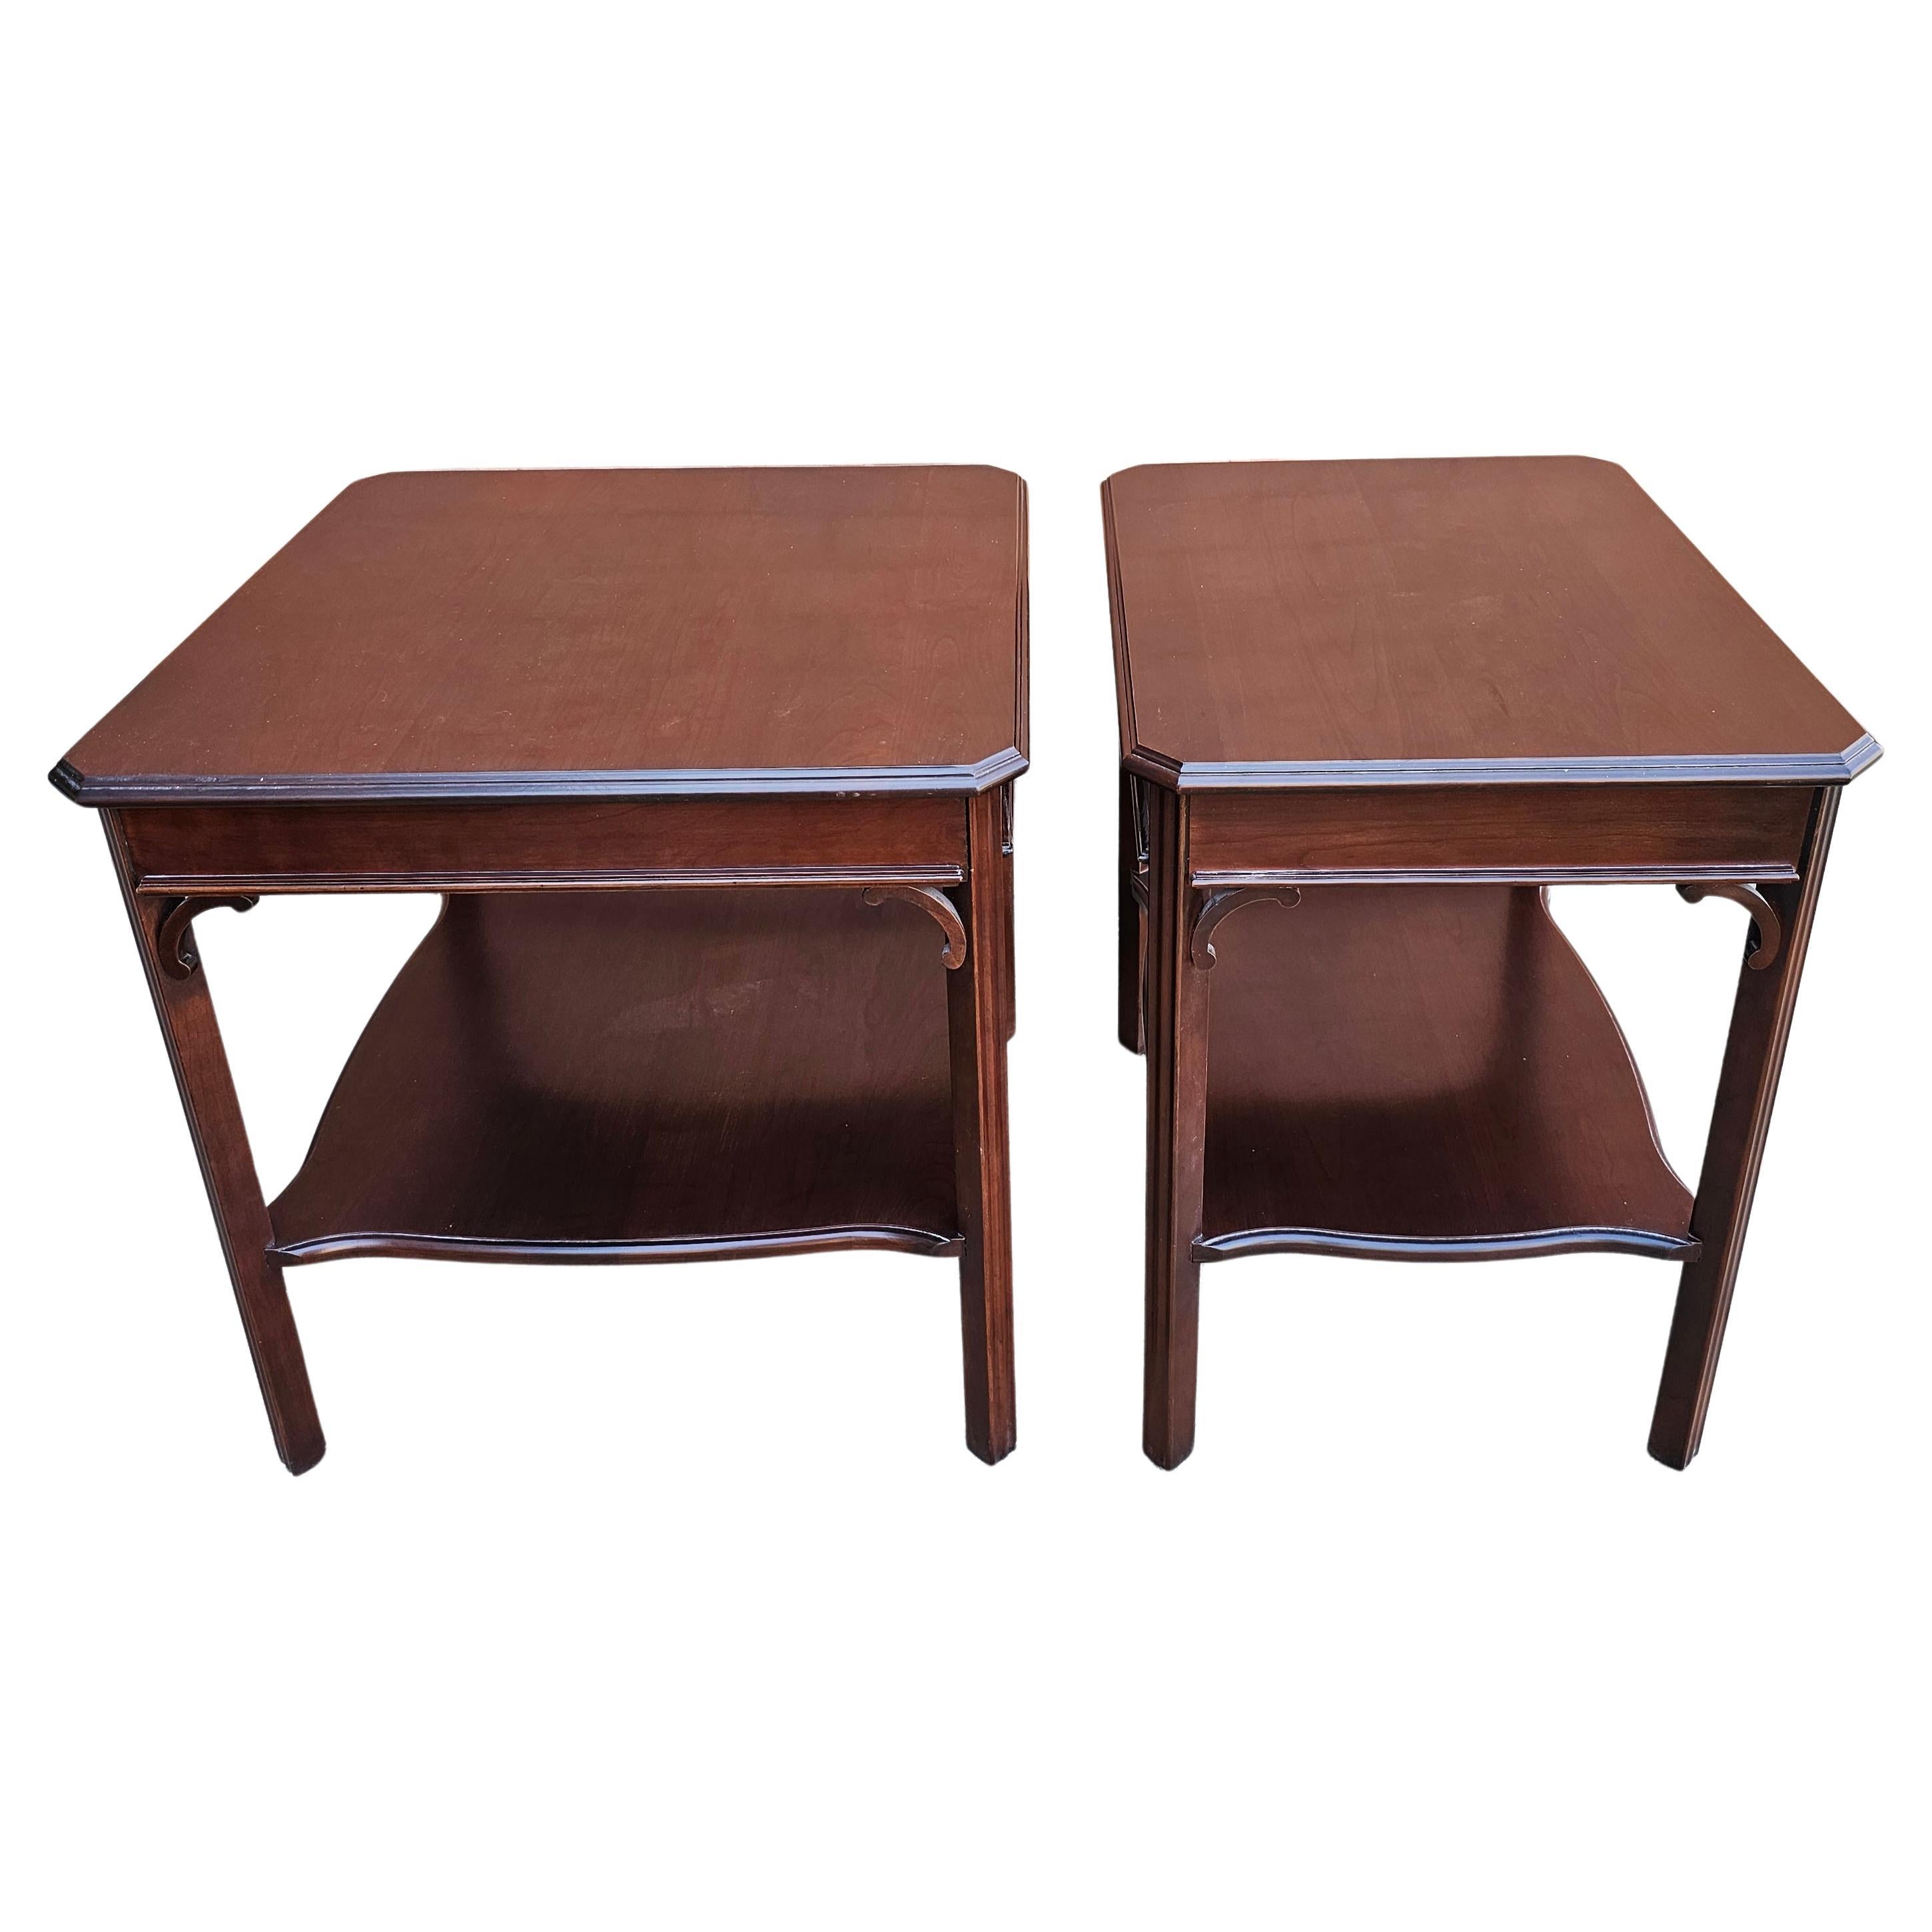 Harden Furniture Side Tables